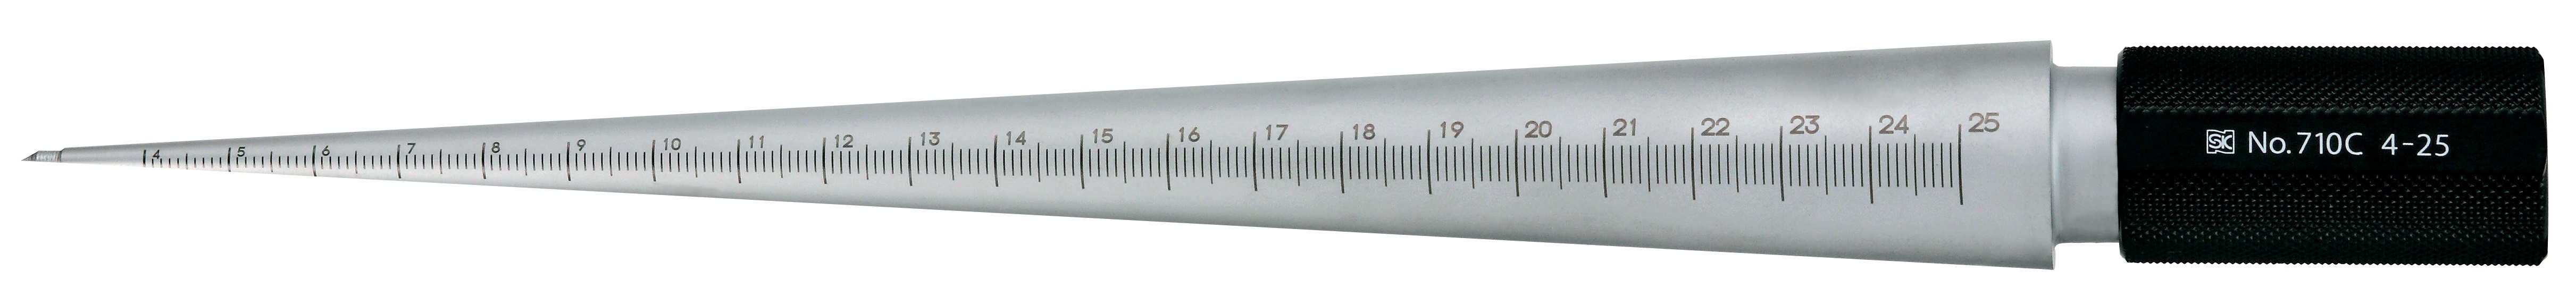 塔波高格-孔尺寸測量圓柱式SilverFinish,TPG710